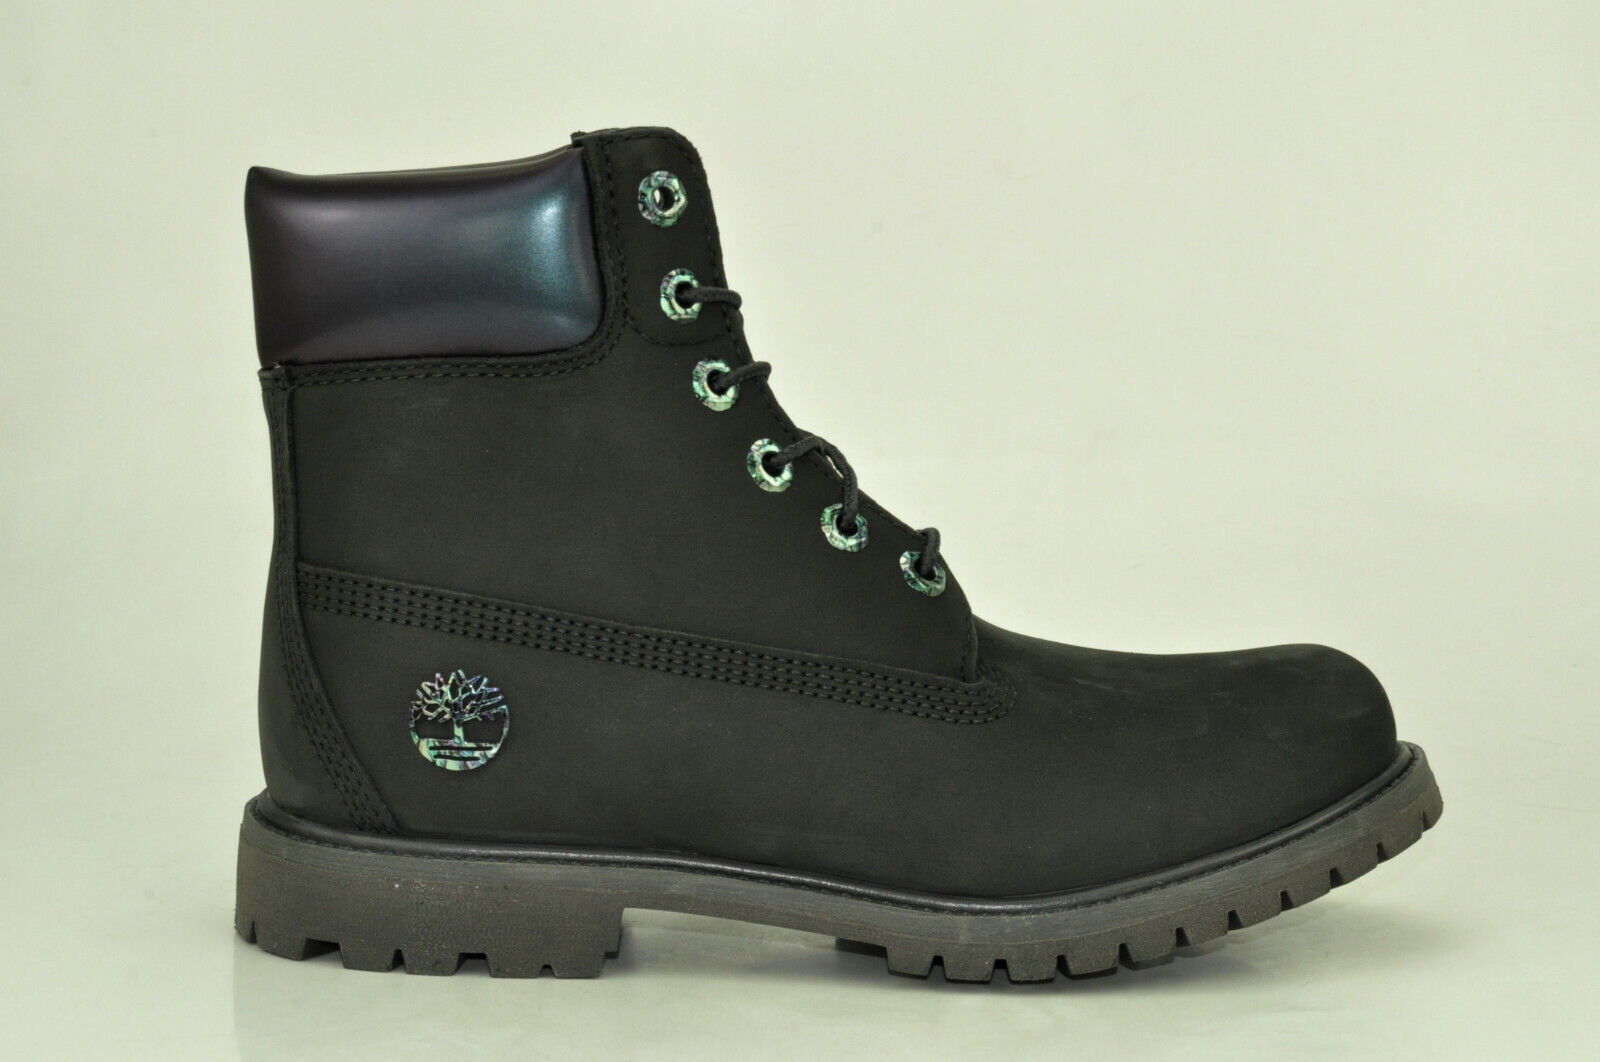 Timberland 6 Inch Premium Boots Waterproof Stiefel Damen Schnürstiefel A24J8 Schuhgröße EUR 39,5 US 8,5